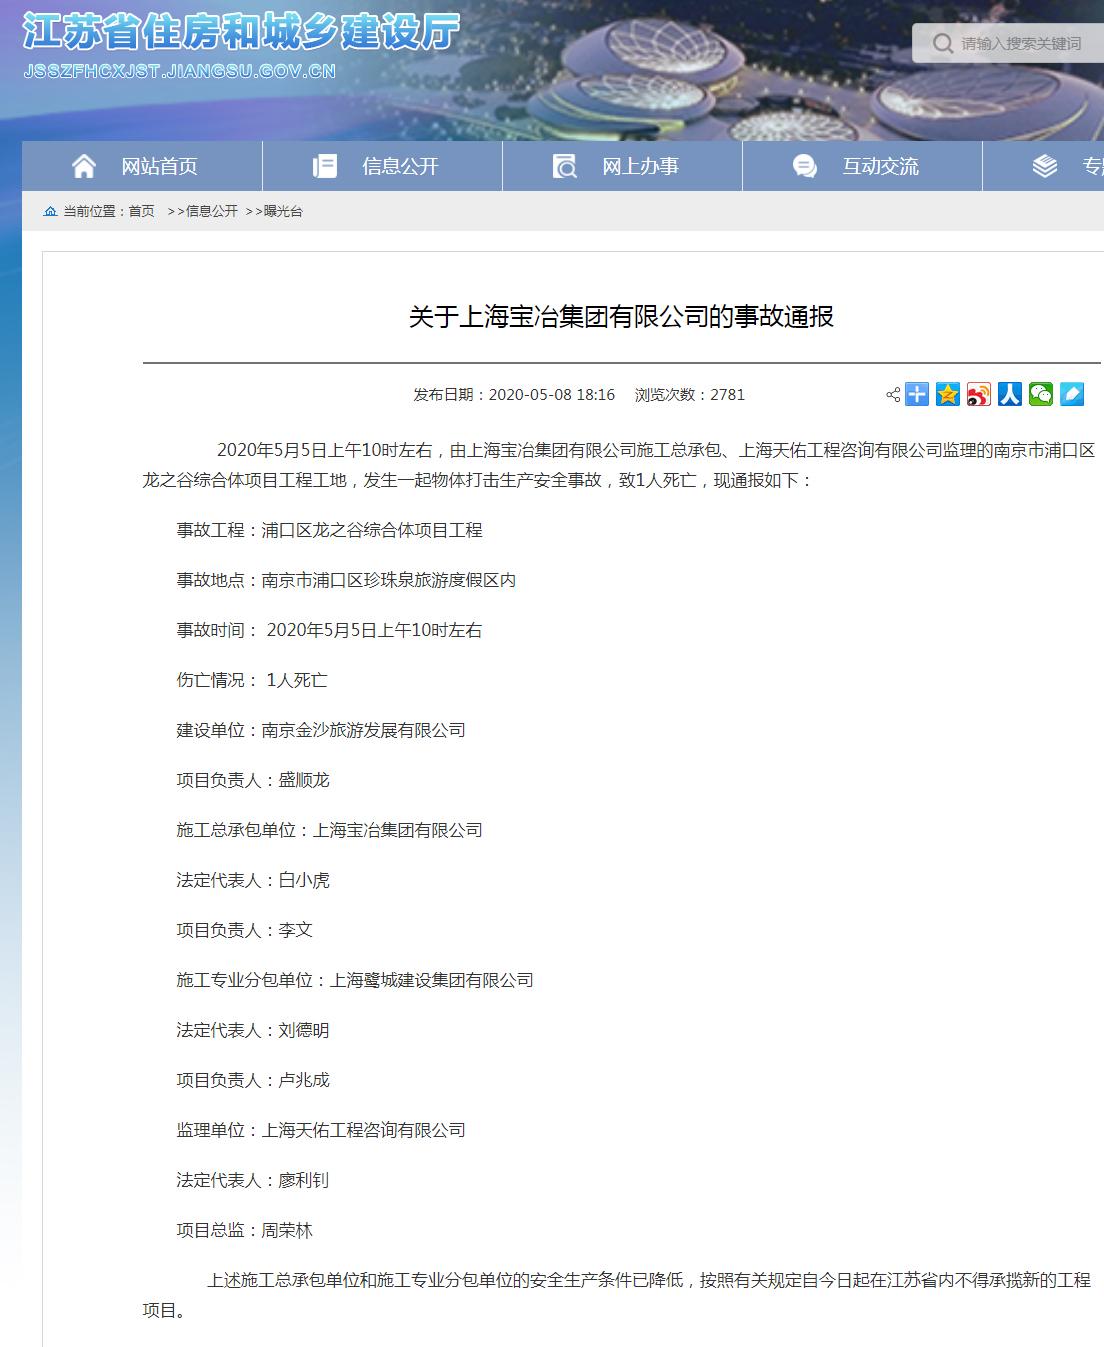 上海宝冶集团有限公司南京市浦口区龙之谷综合体项目事故致1死 被禁承揽新工程